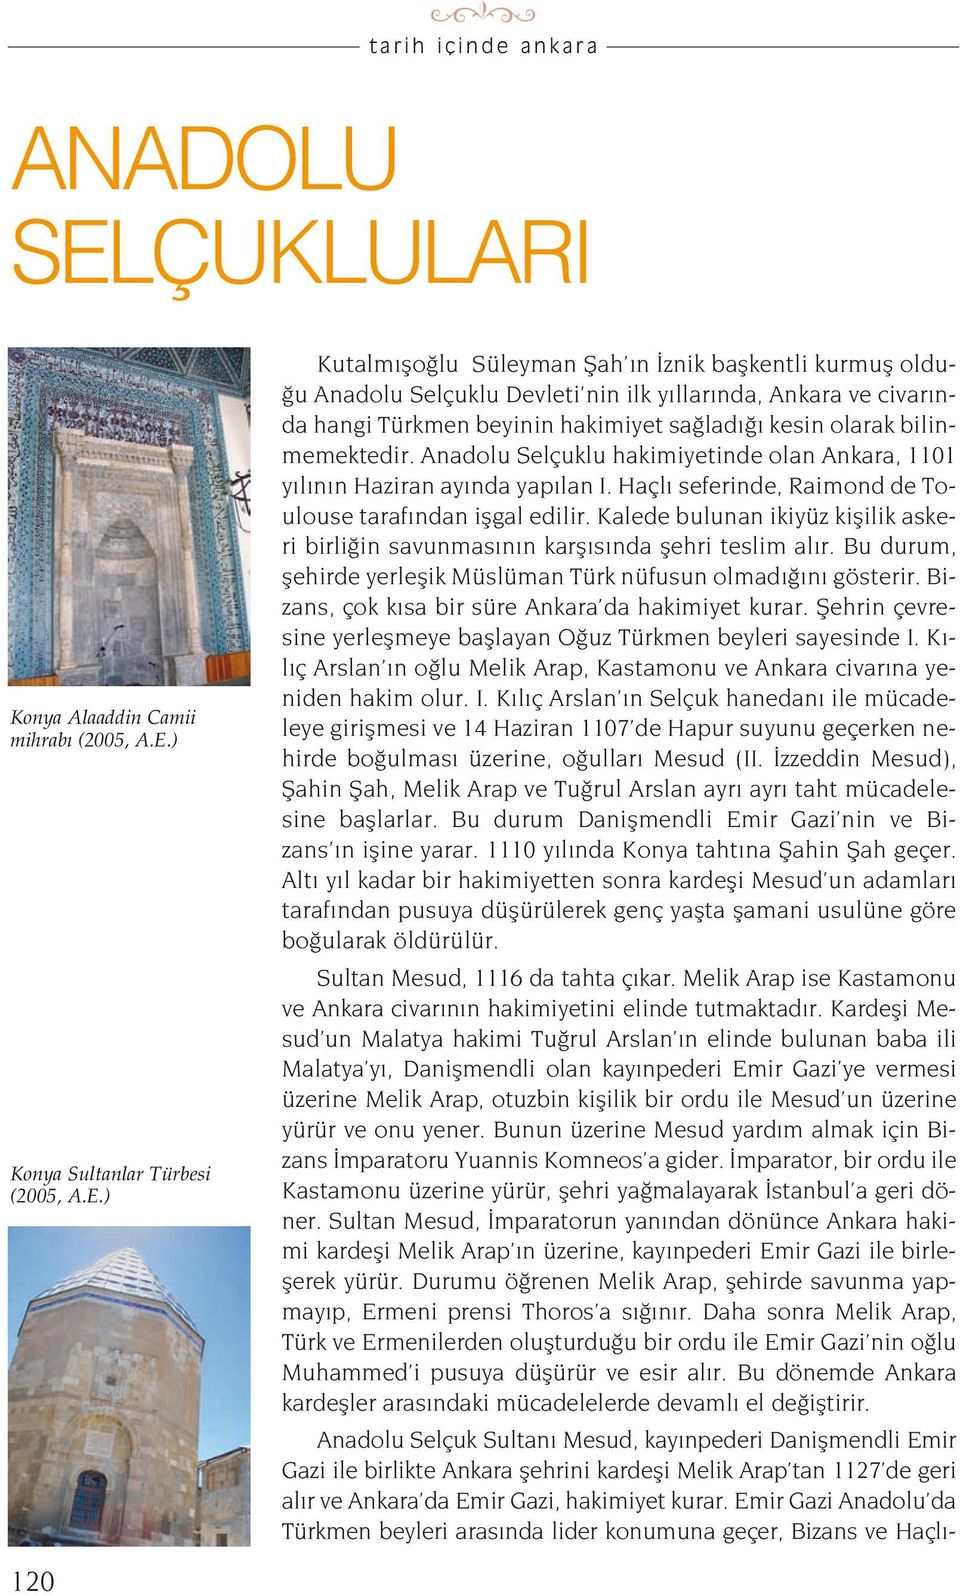 ) Konya Sultanlar Türbesi (2005, A.E.